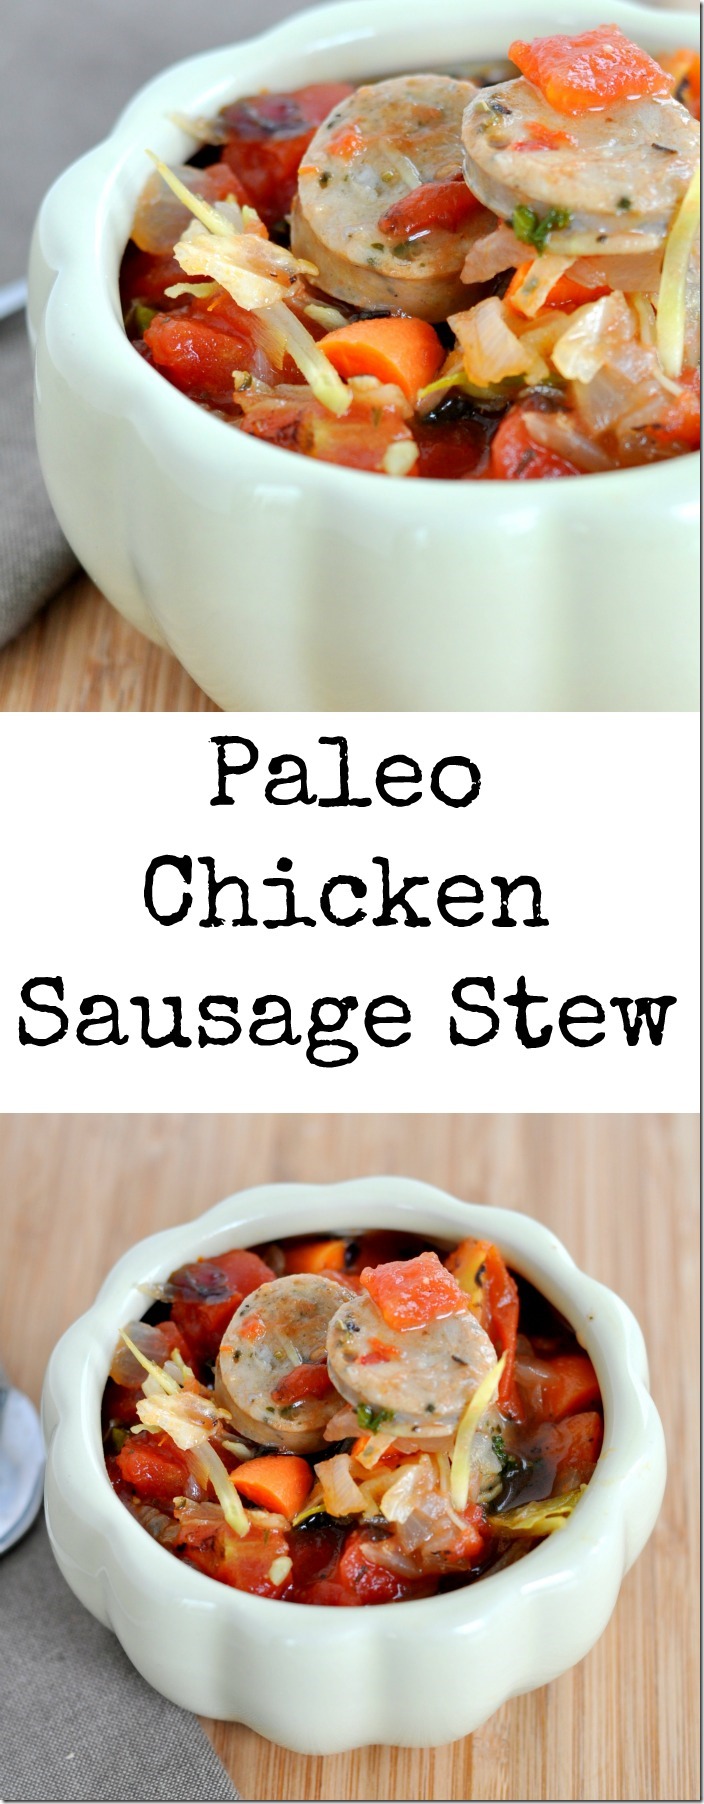 paleo-chicken-sausage-stew-collage